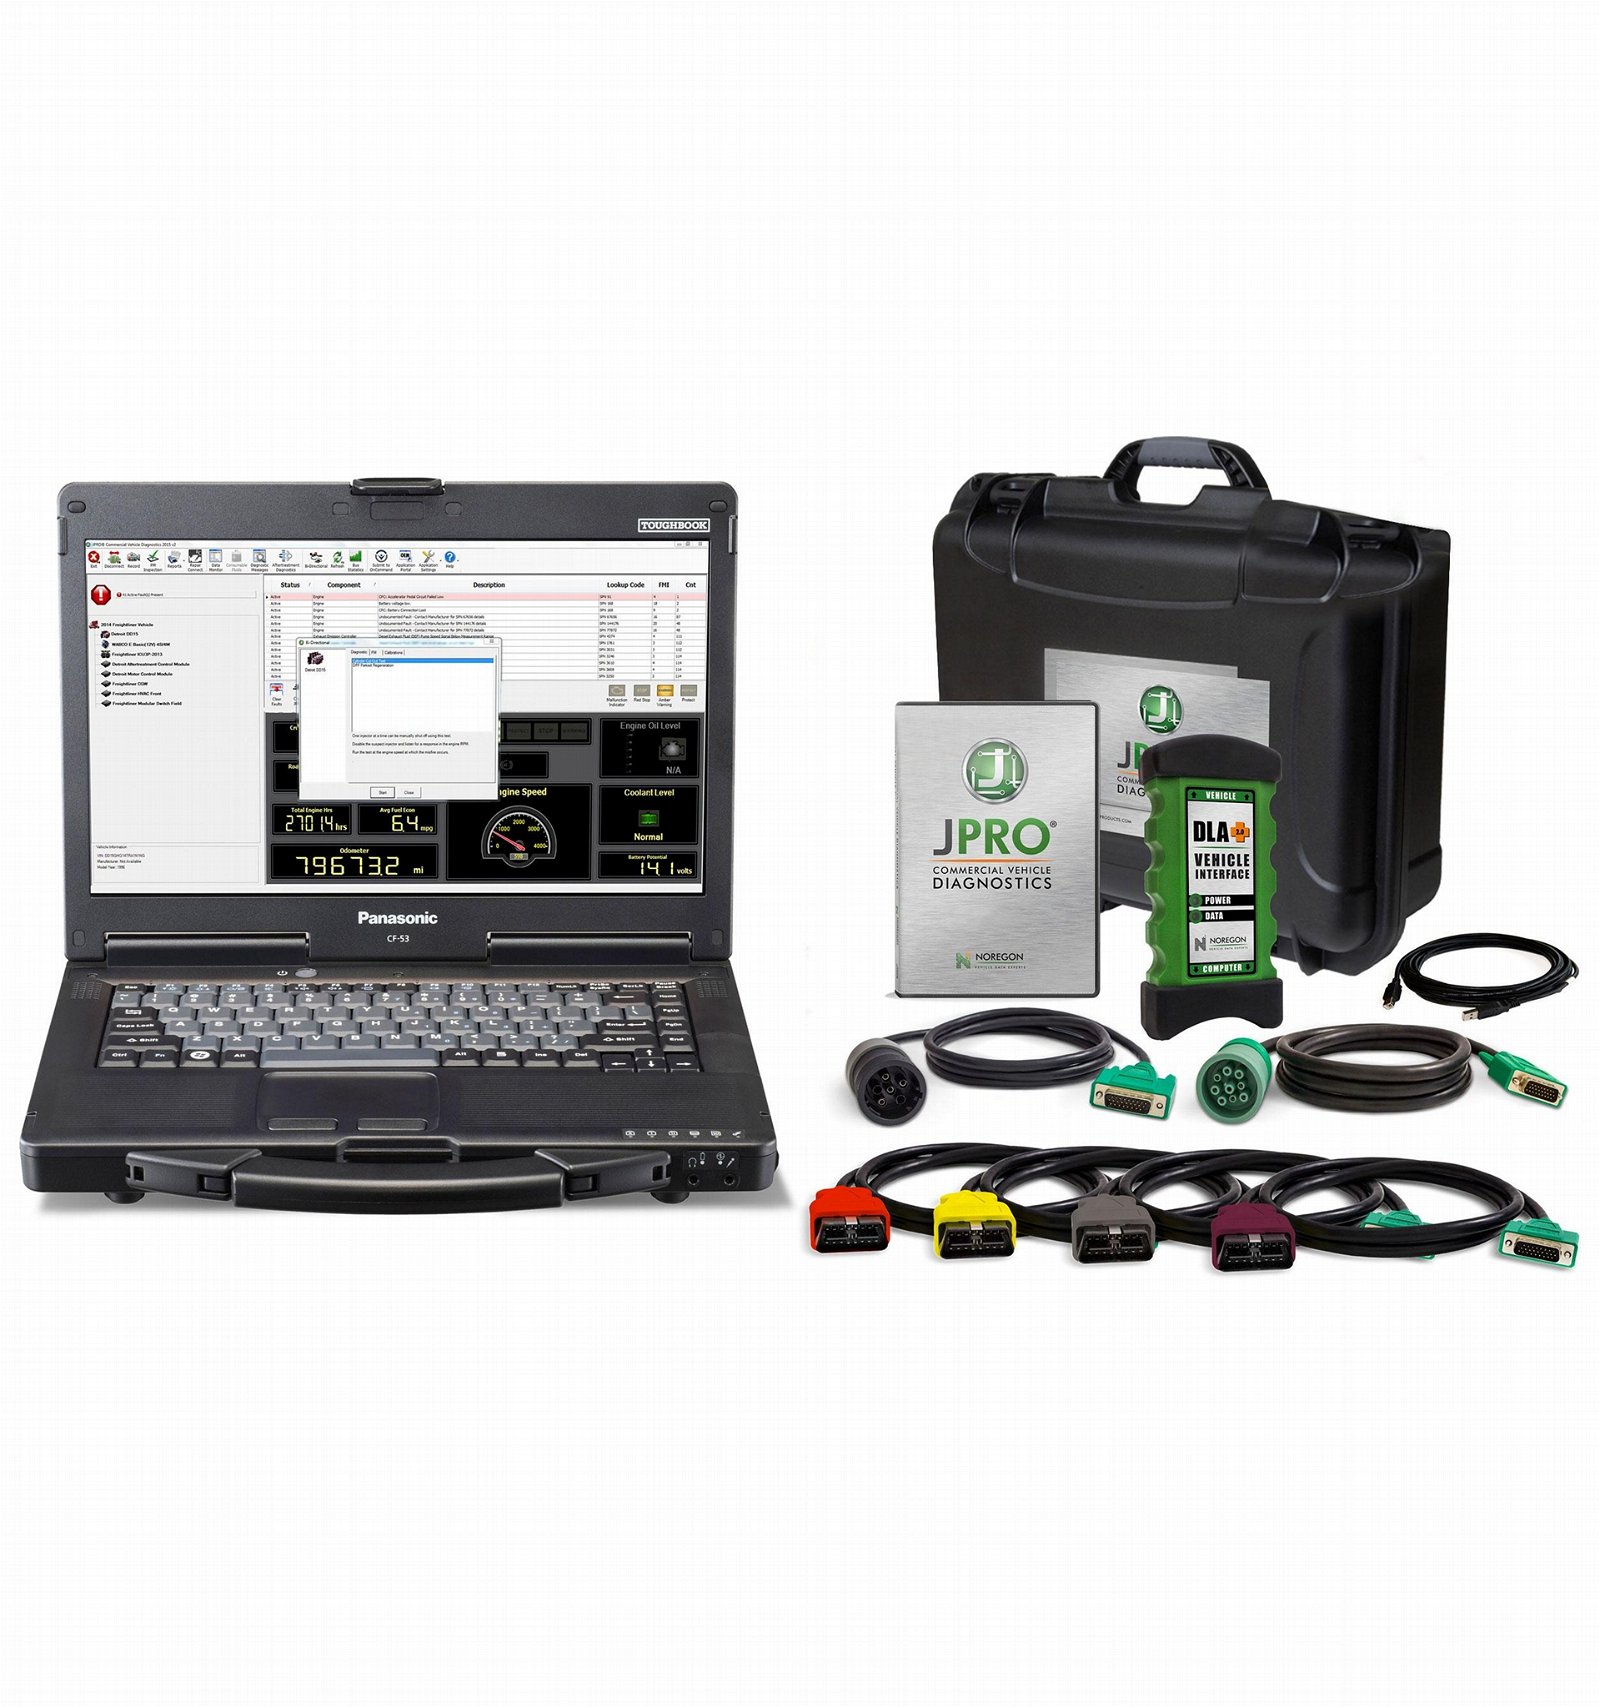 JPro Professional Diagnostic Tool Box